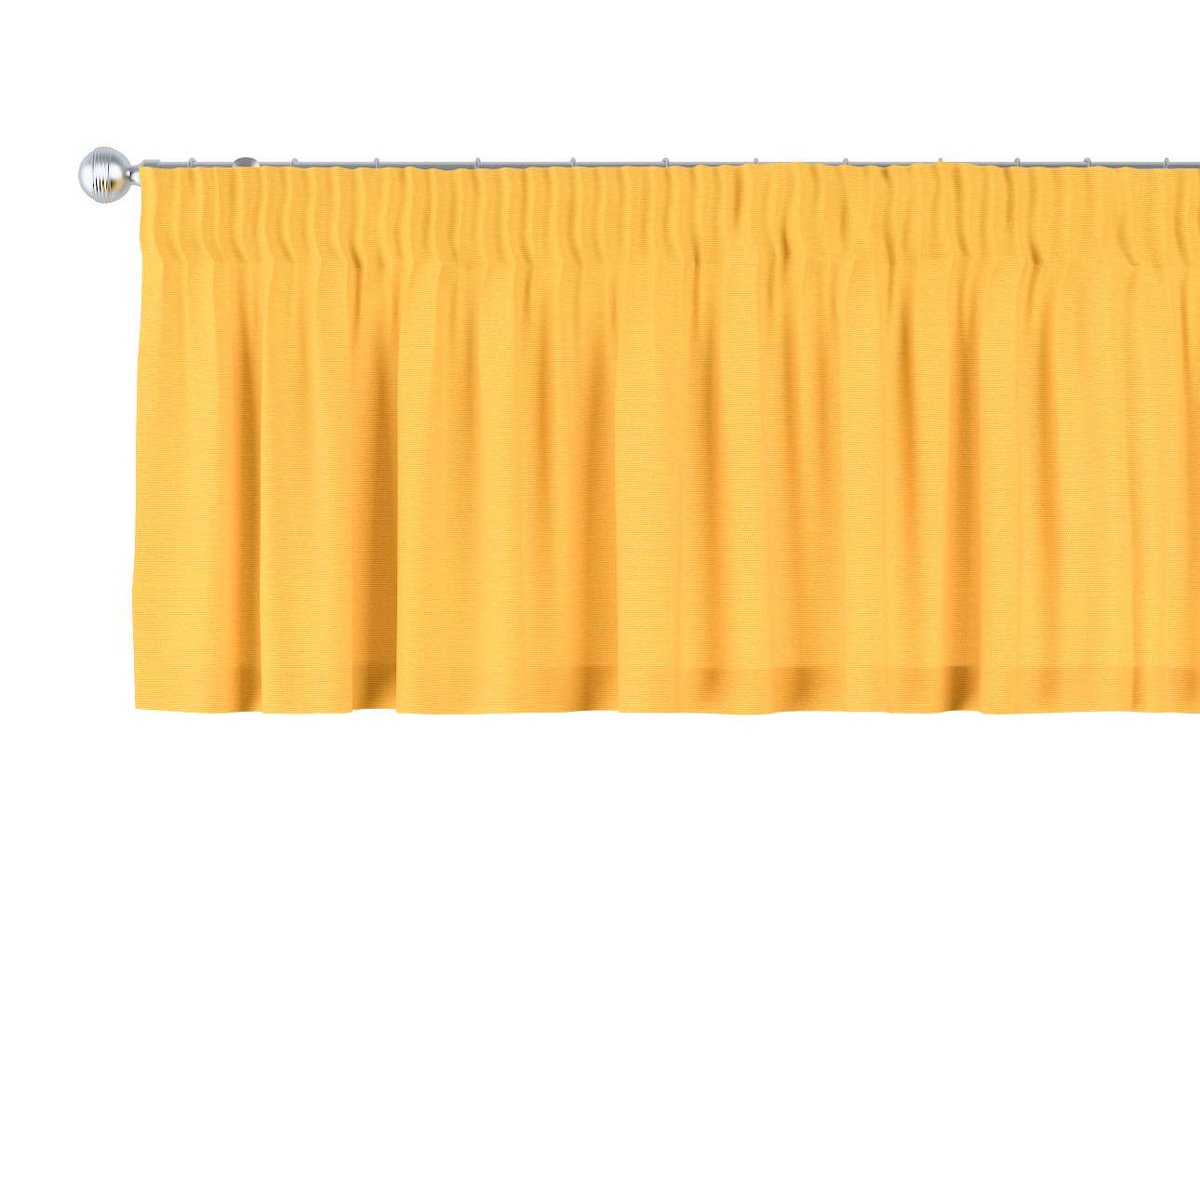 Lambrekin na taśmie marszczącej, żółty, 130 × 40 cm, Loneta